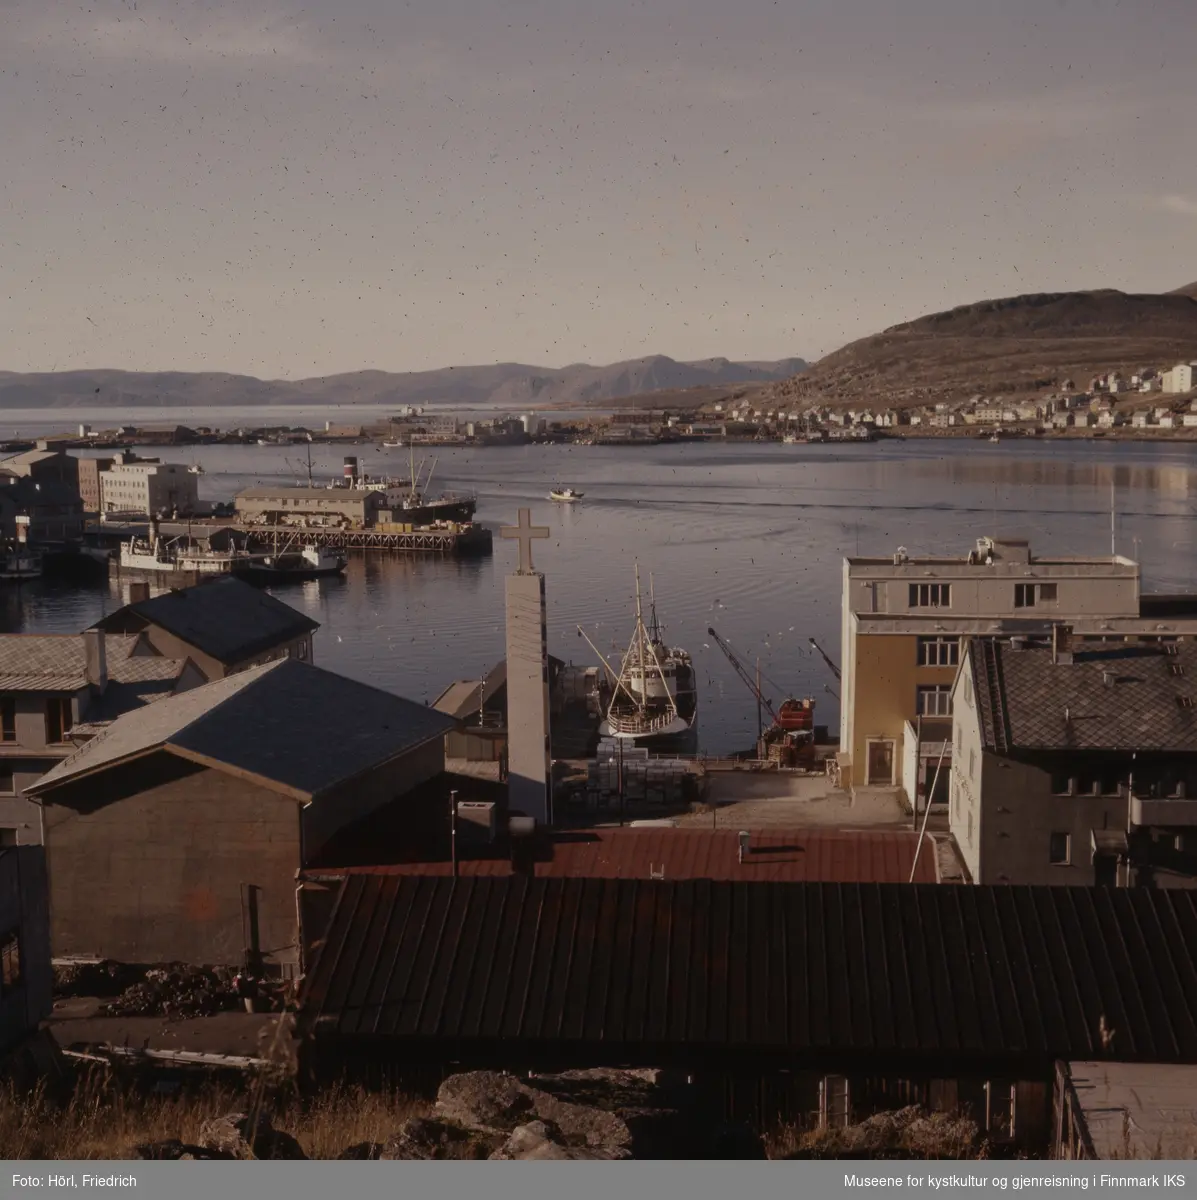 Utsikt fra Salenfjellet med tårnet til Den katolske kike i forgrunn, Hammerfest havn i midten og bydelen Fuglenes i bakgrunn. I havna ligger båter og man kan se dampskipskaia og en del av Findusfabrikken med kaianlegg og kraner.